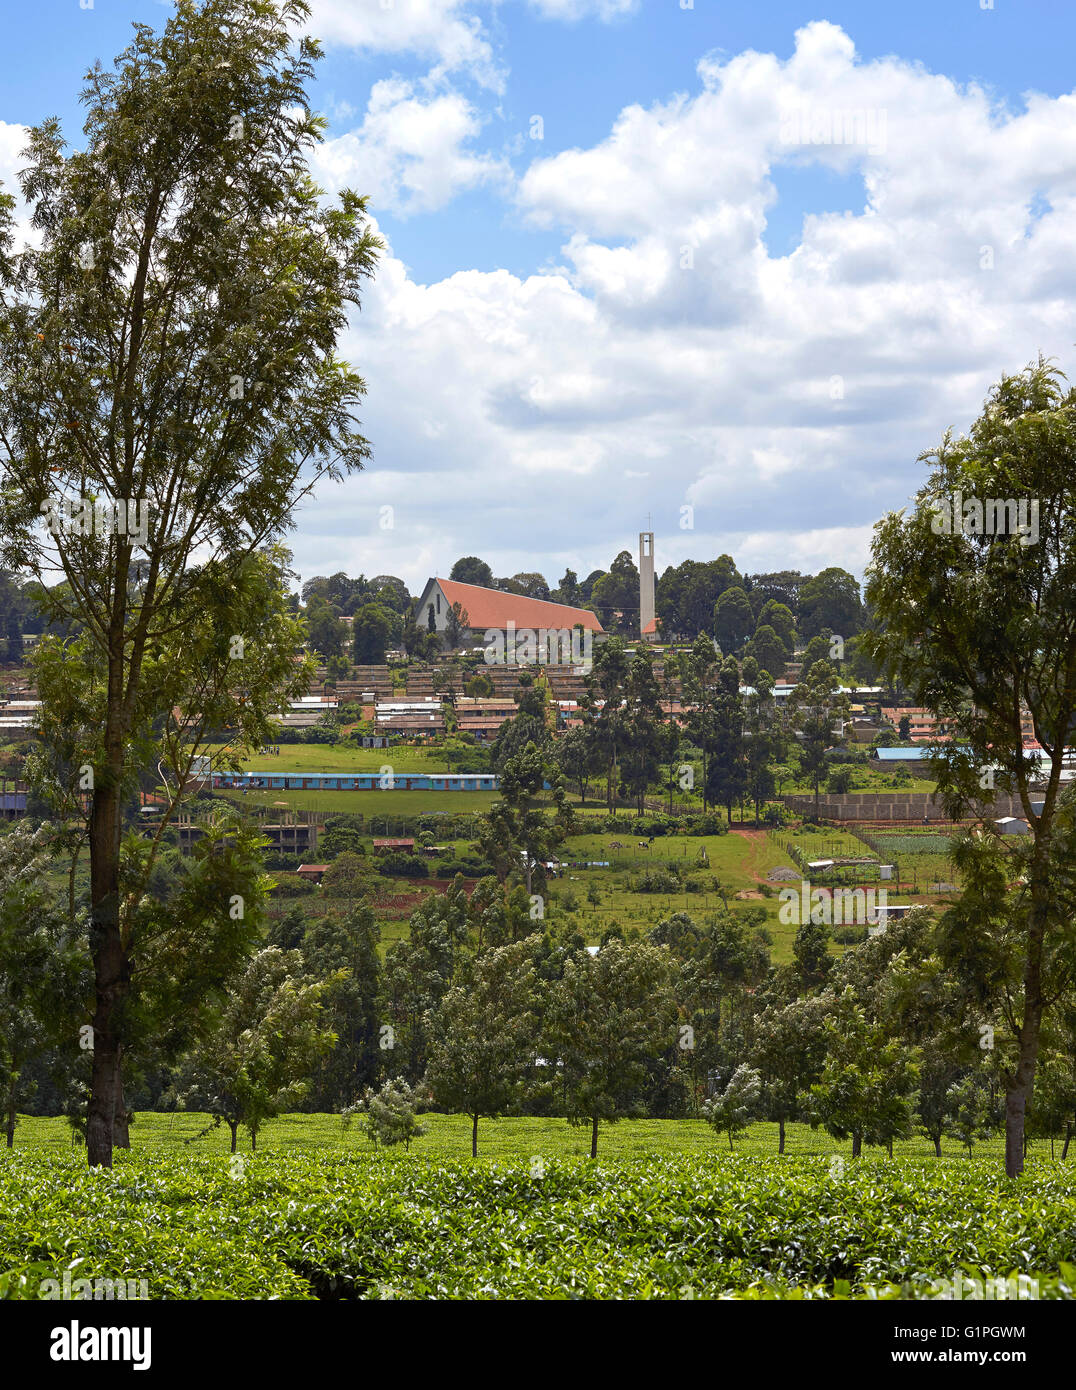 Vue éloignée sur les plantations de thé et les logements locaux. La Cathédrale du Sacré-Cœur du diocèse catholique de Kericho, Kericho, au Kenya. Banque D'Images